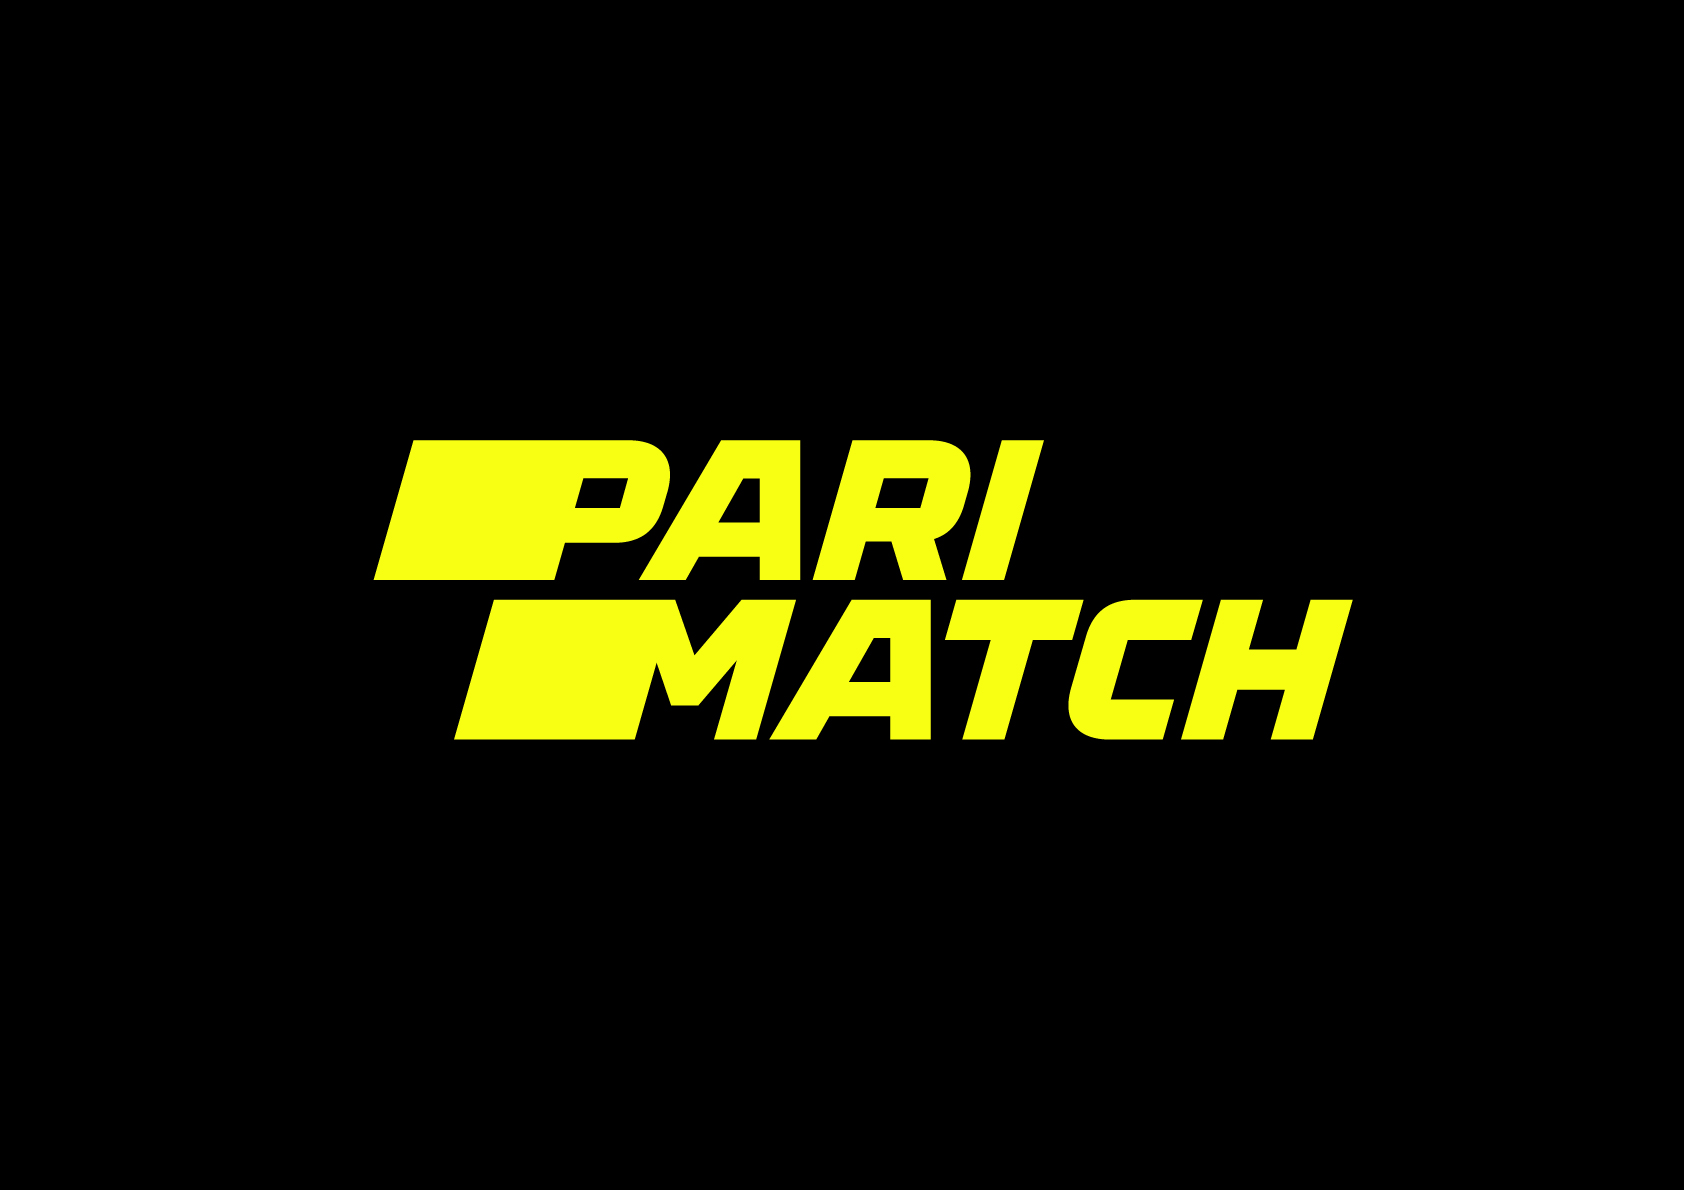 Download Parimatch App (.apk) in India